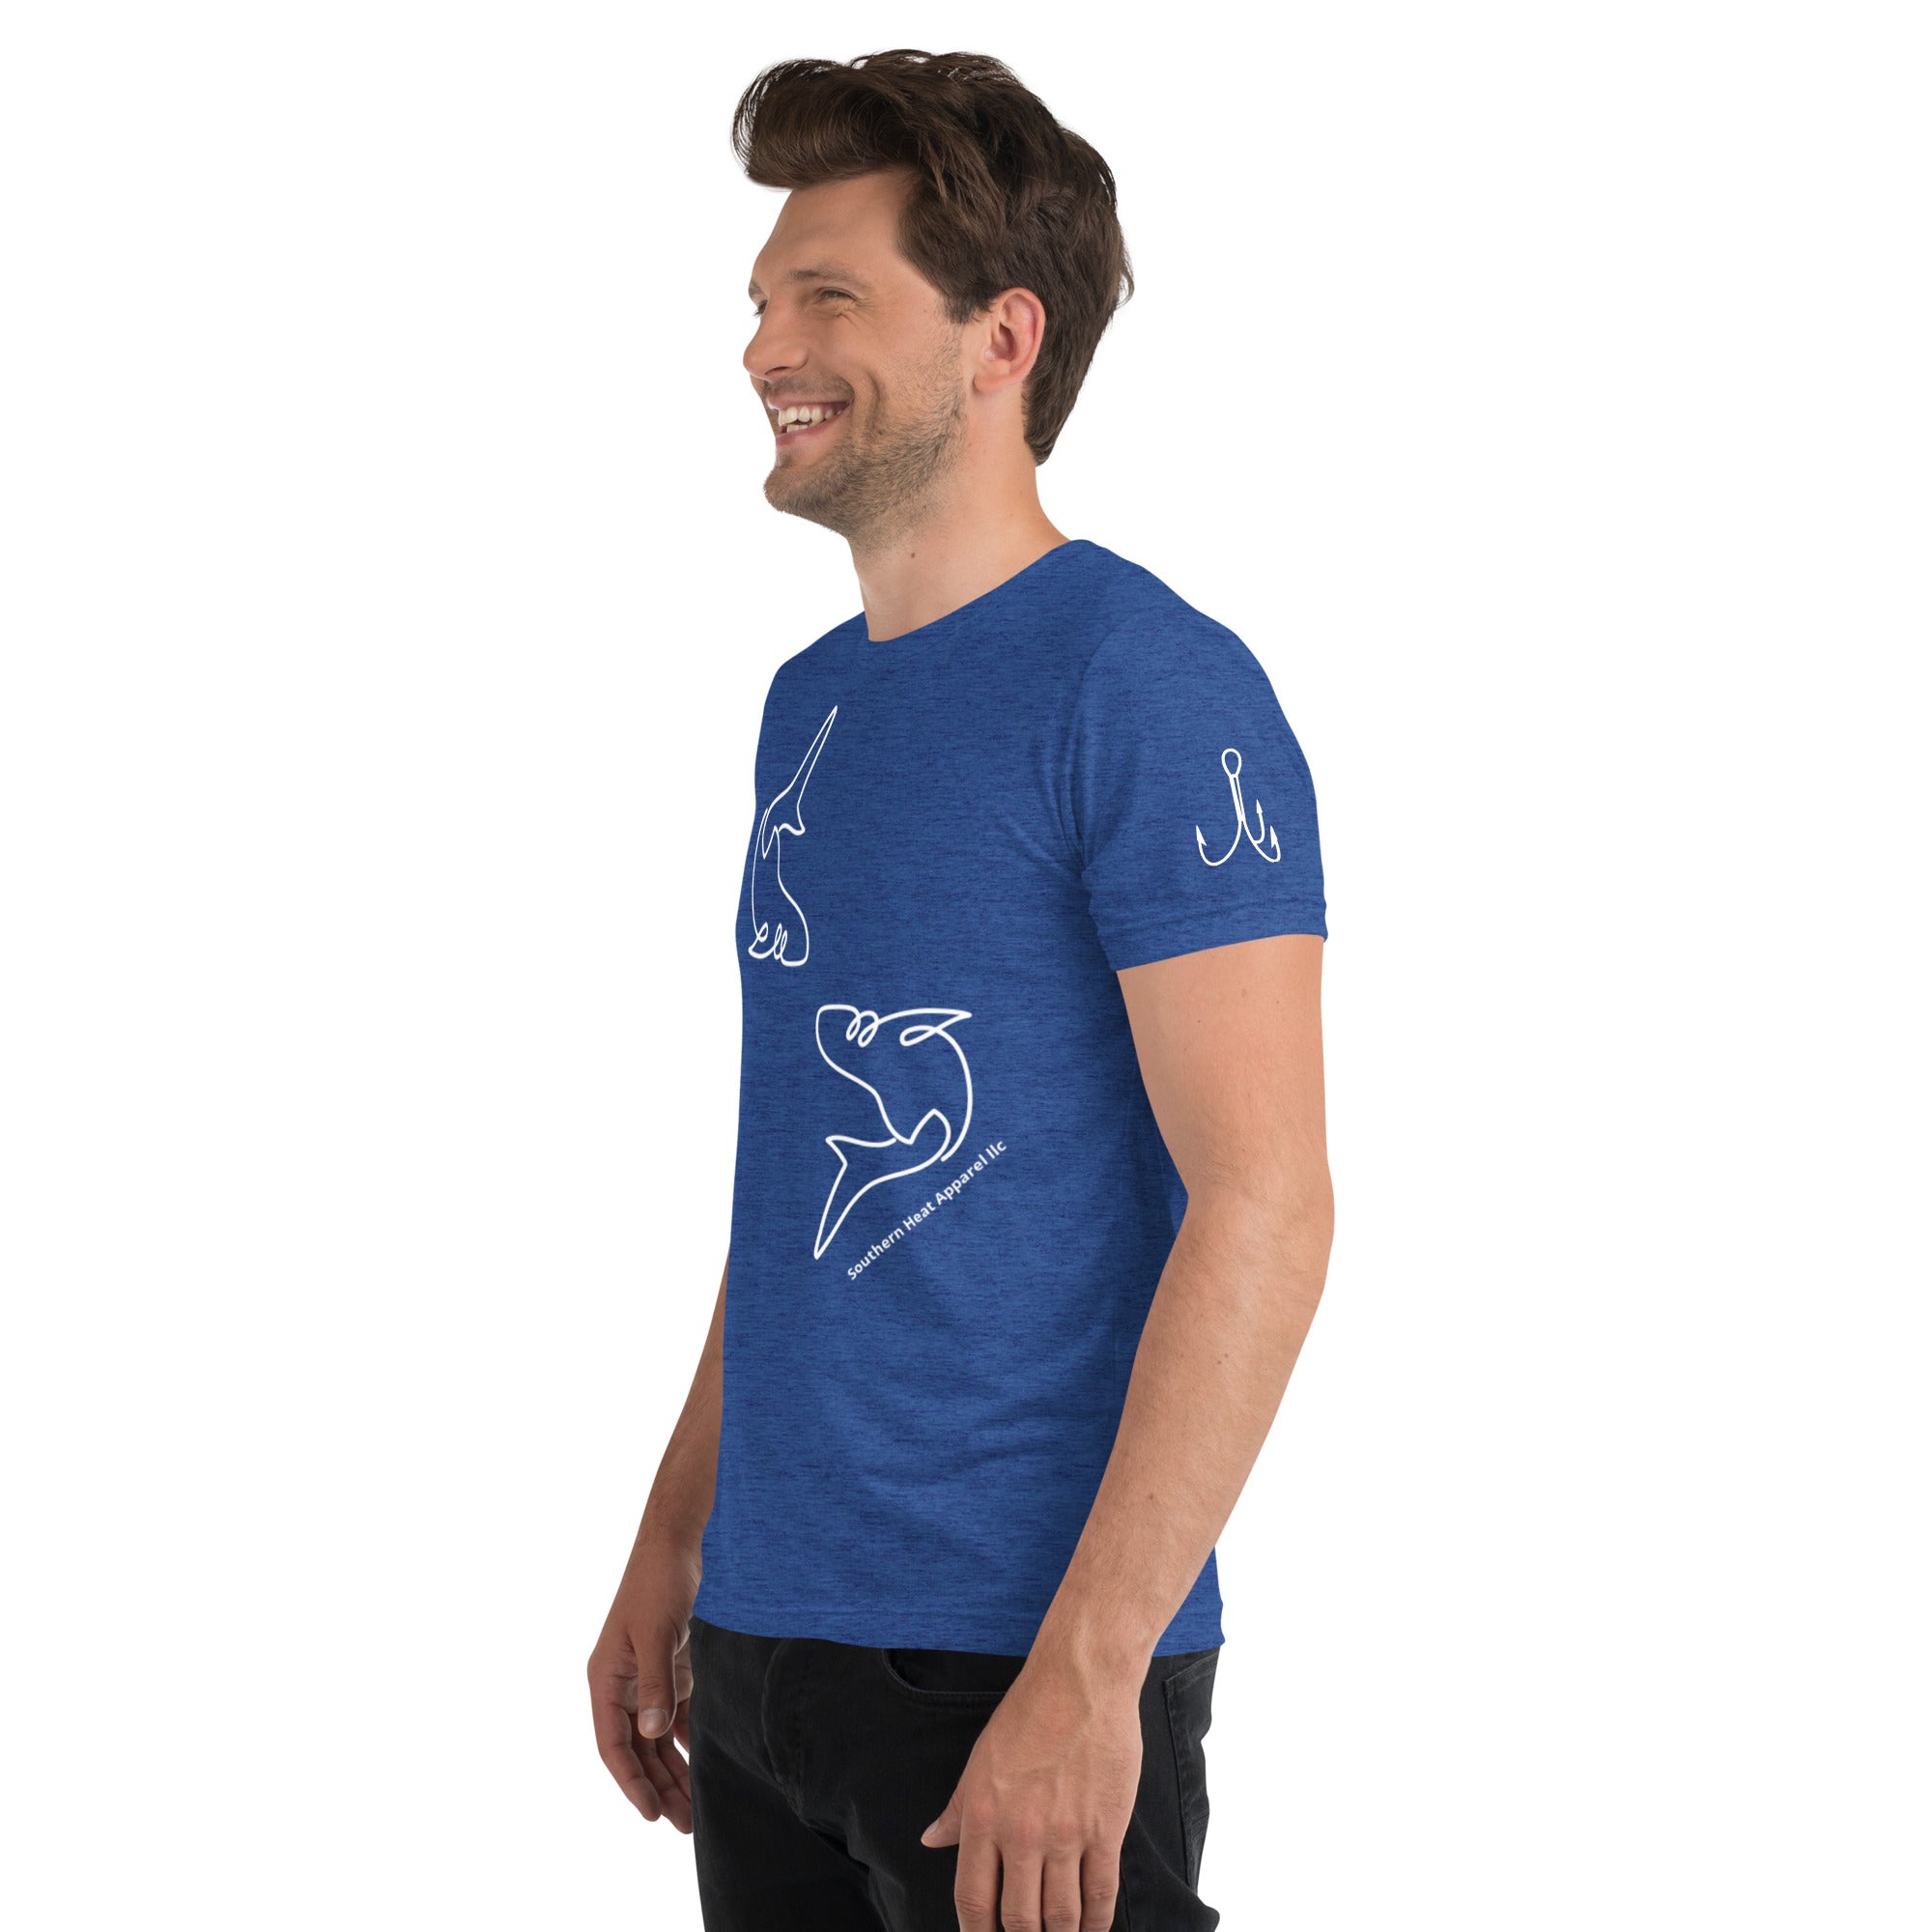 Fish and hook- Mens short sleeve t-shirt